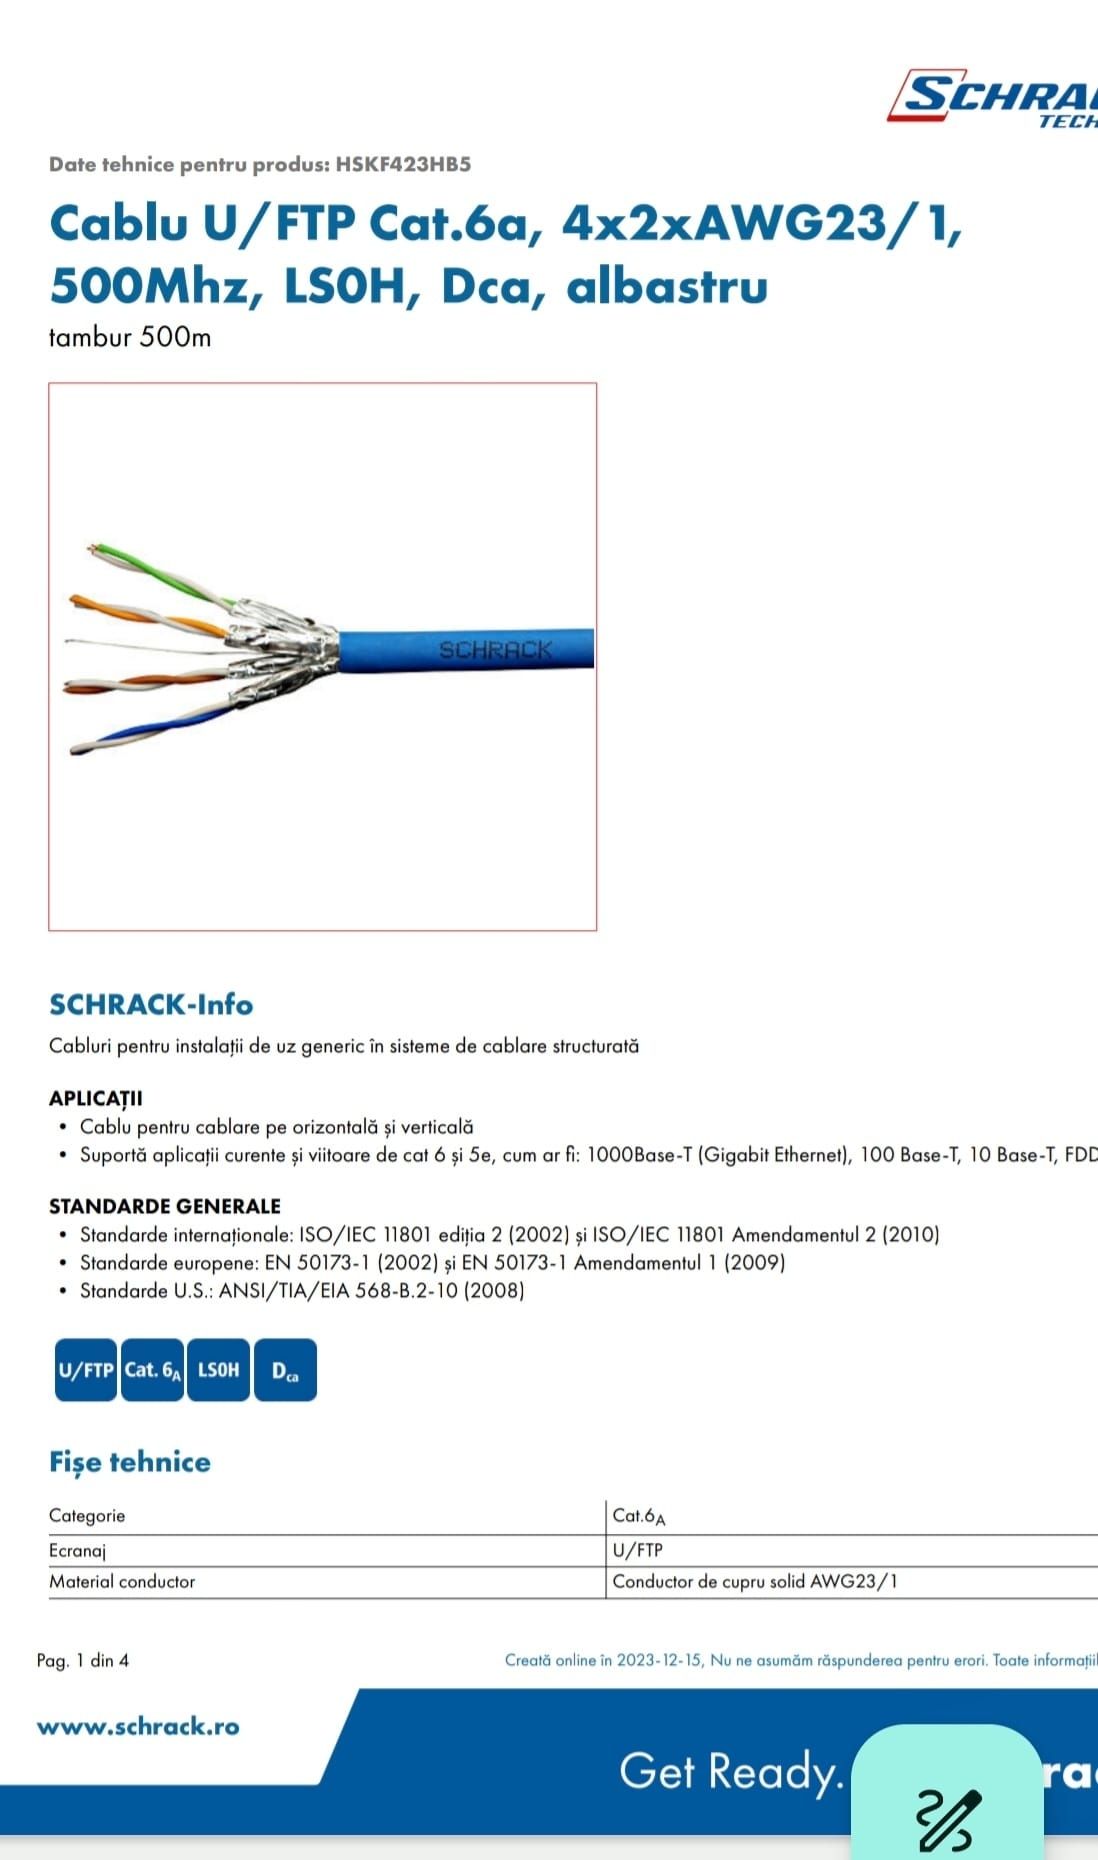 Cablu U/FTP Cat.6a, 4x2xAWG23/1, 500Mhz, LS0H, Dca, albastru